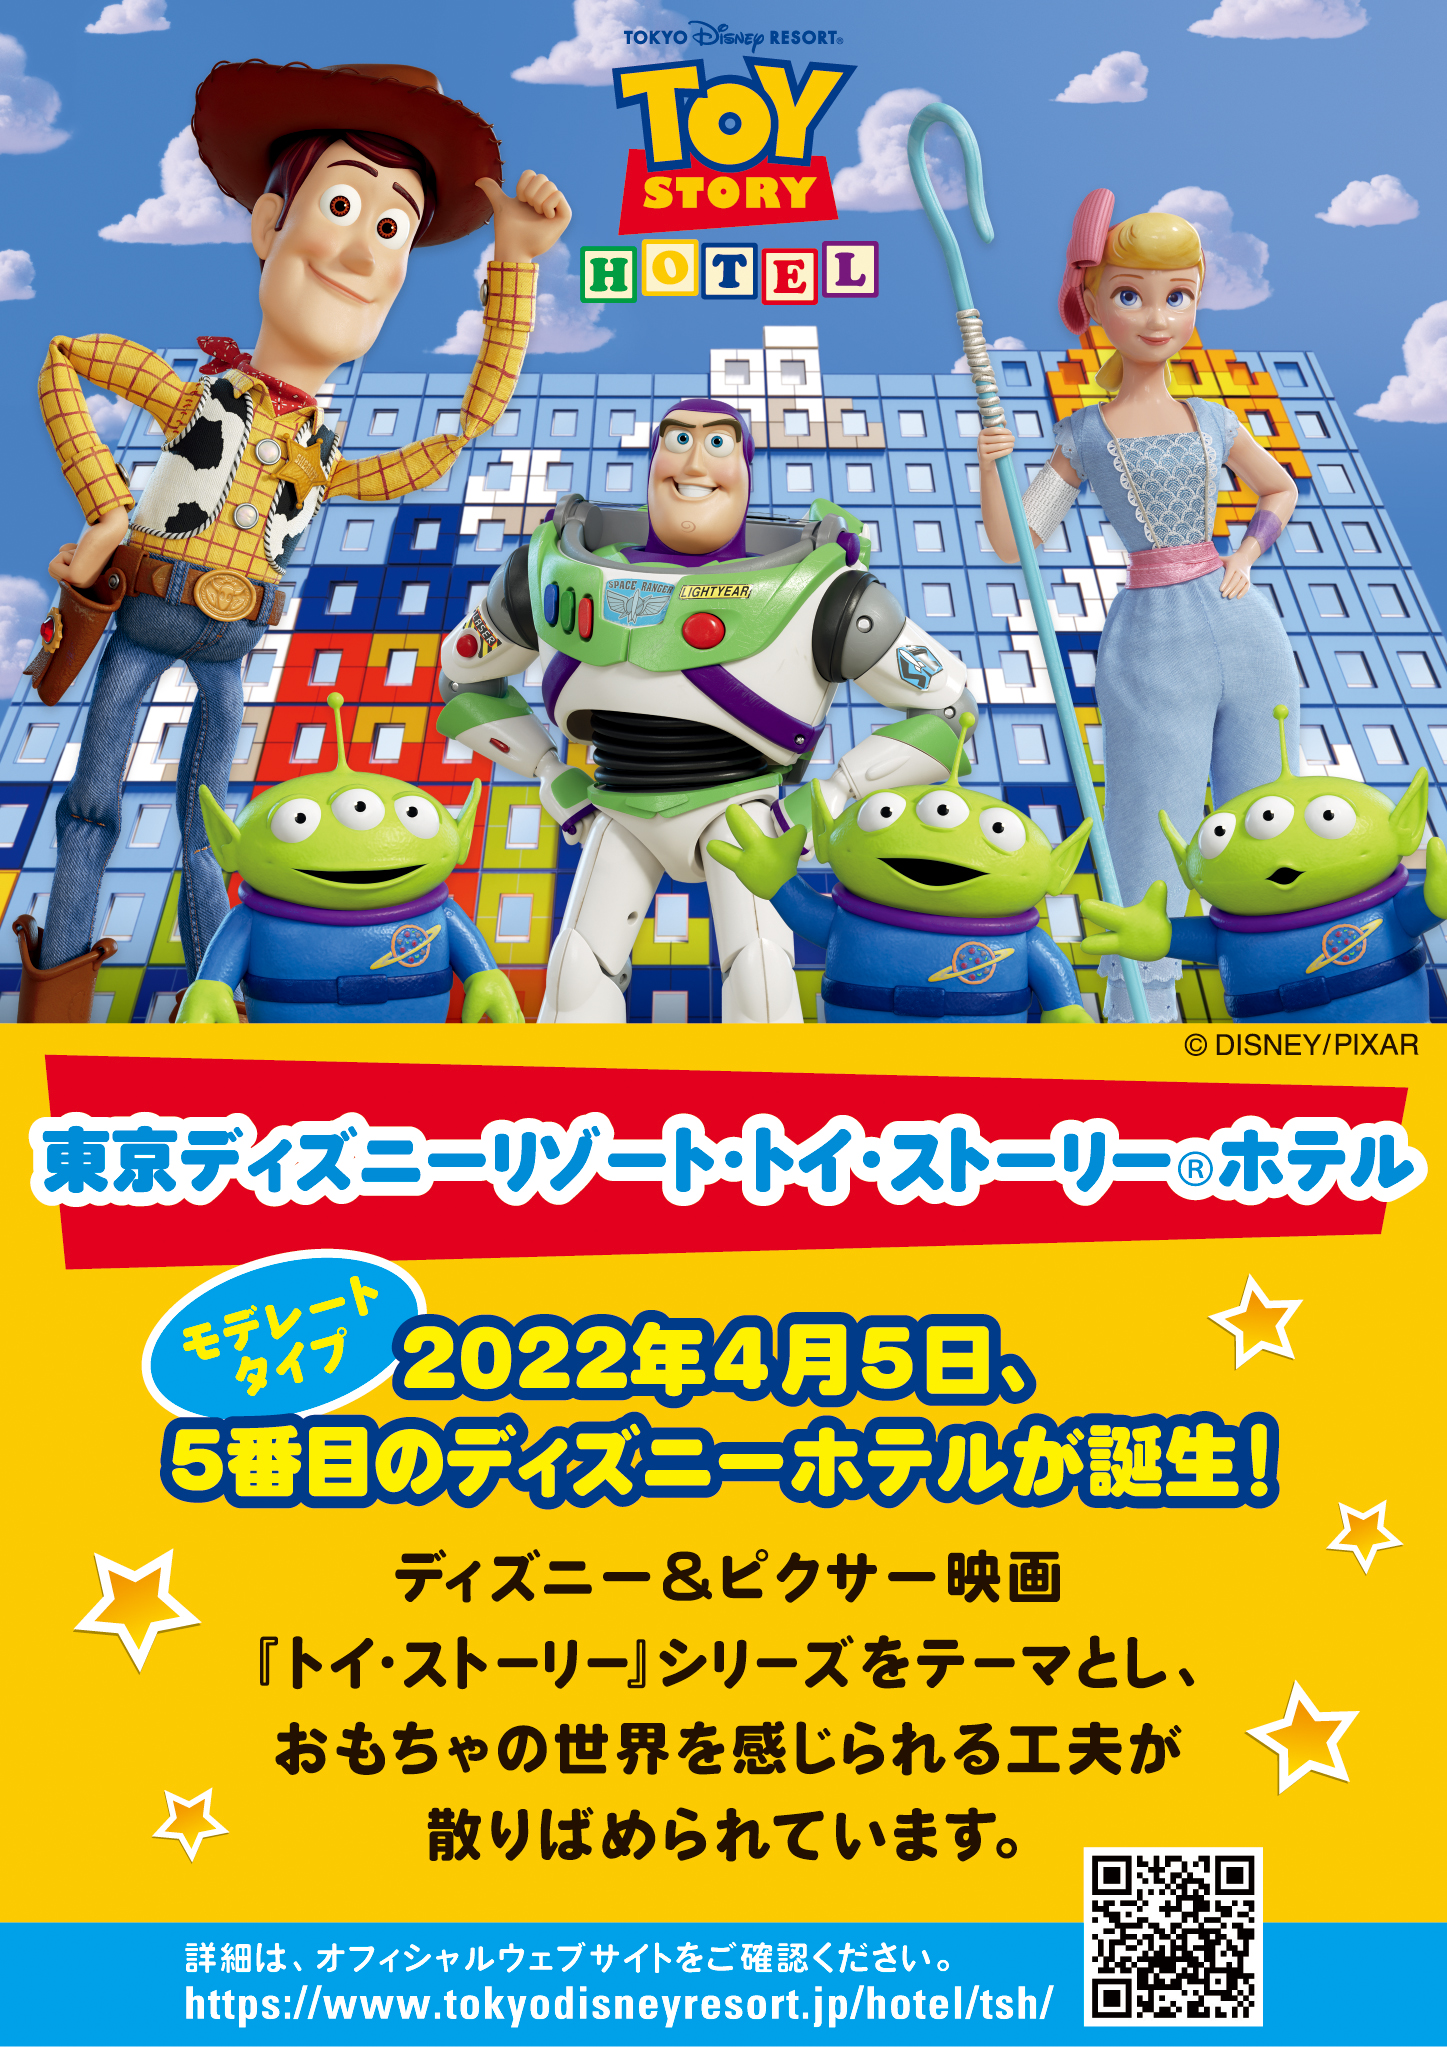 東京ディズニーリゾート・トイ・ストーリー（R）ホテル モデレートタイプ 2022年4月5日、5番目のディズニーホテルが誕生！ディズニー&ピクサー映画「トイ・ストーリー」シリーズをテーマとし、おもちゃの世界を感じられる工夫が散りばめられています。詳細はオフィシャルウェブサイトをご確認ください。https://www.tokyodisneyresort.jp/hotel/tsh/